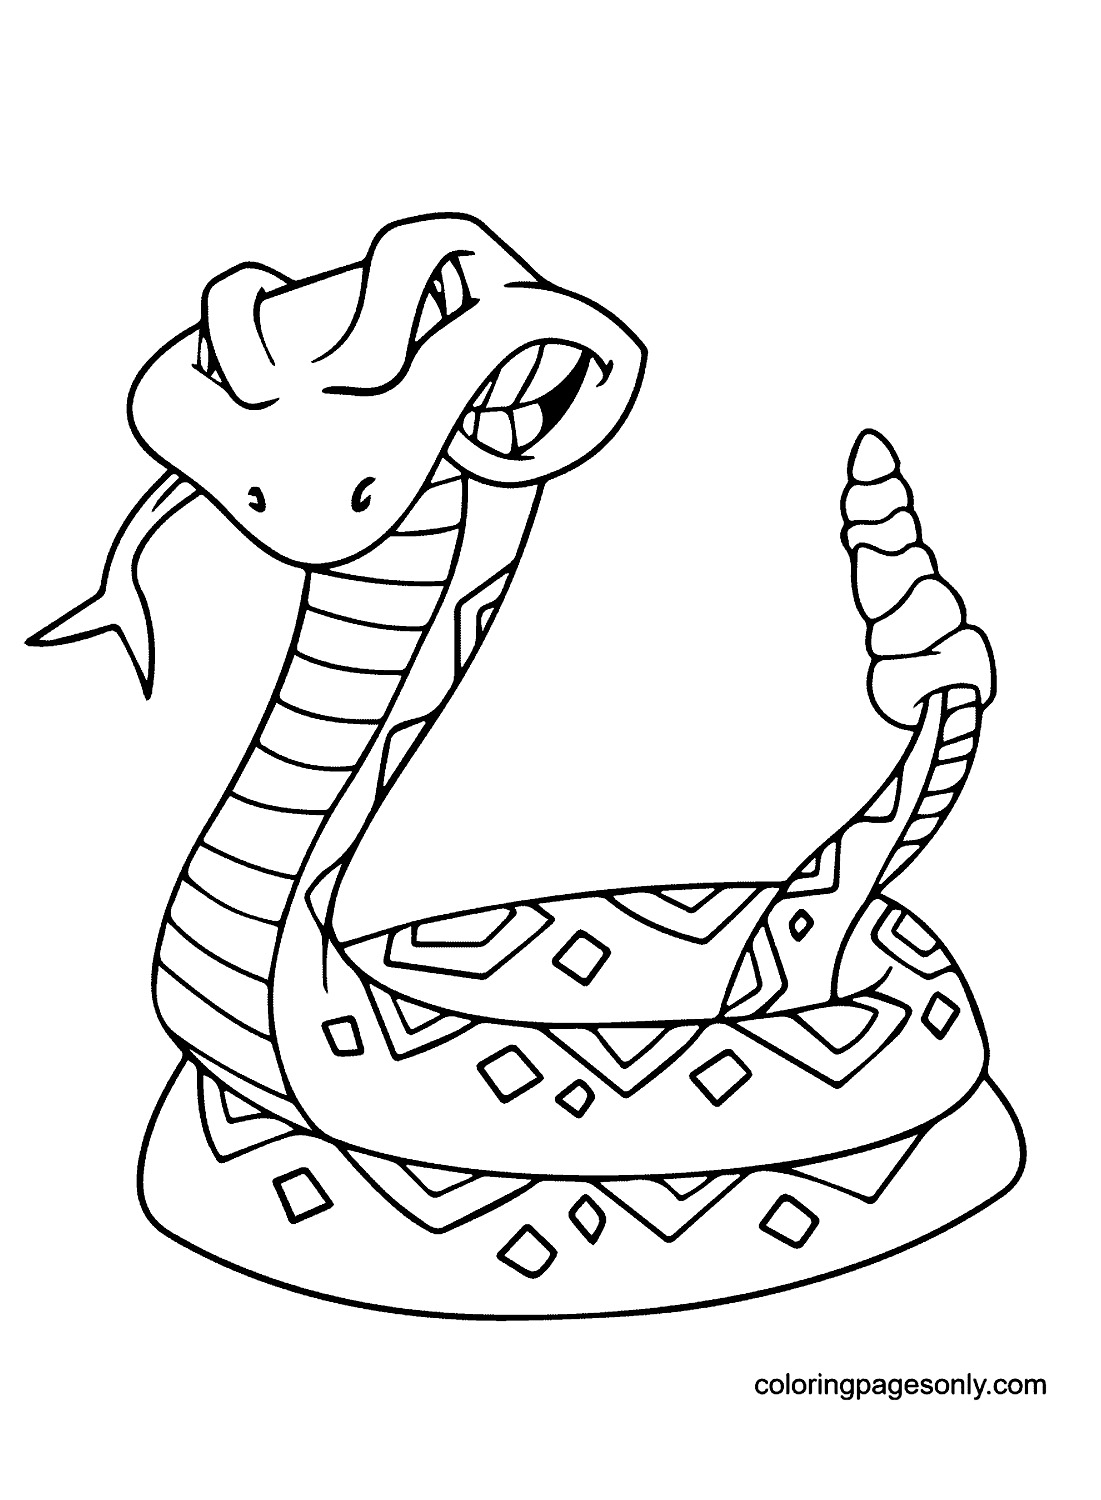 Klapperschlange von Snake